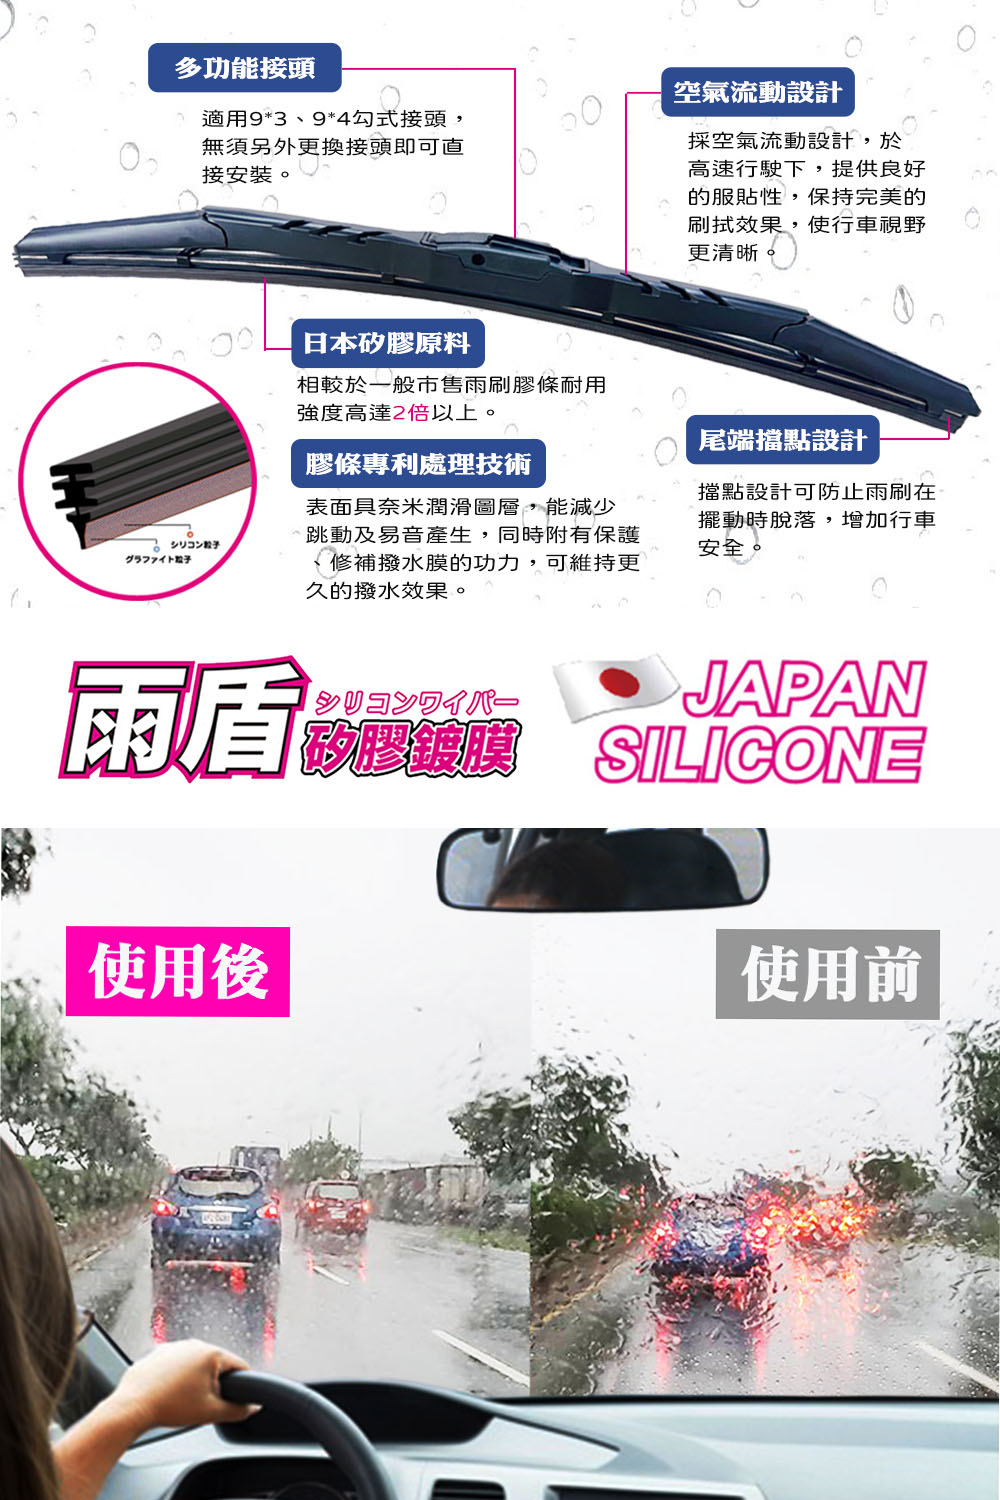 雨盾 Suzuki Carry 各代專用矽膠鍍膜雨刷(日本膠